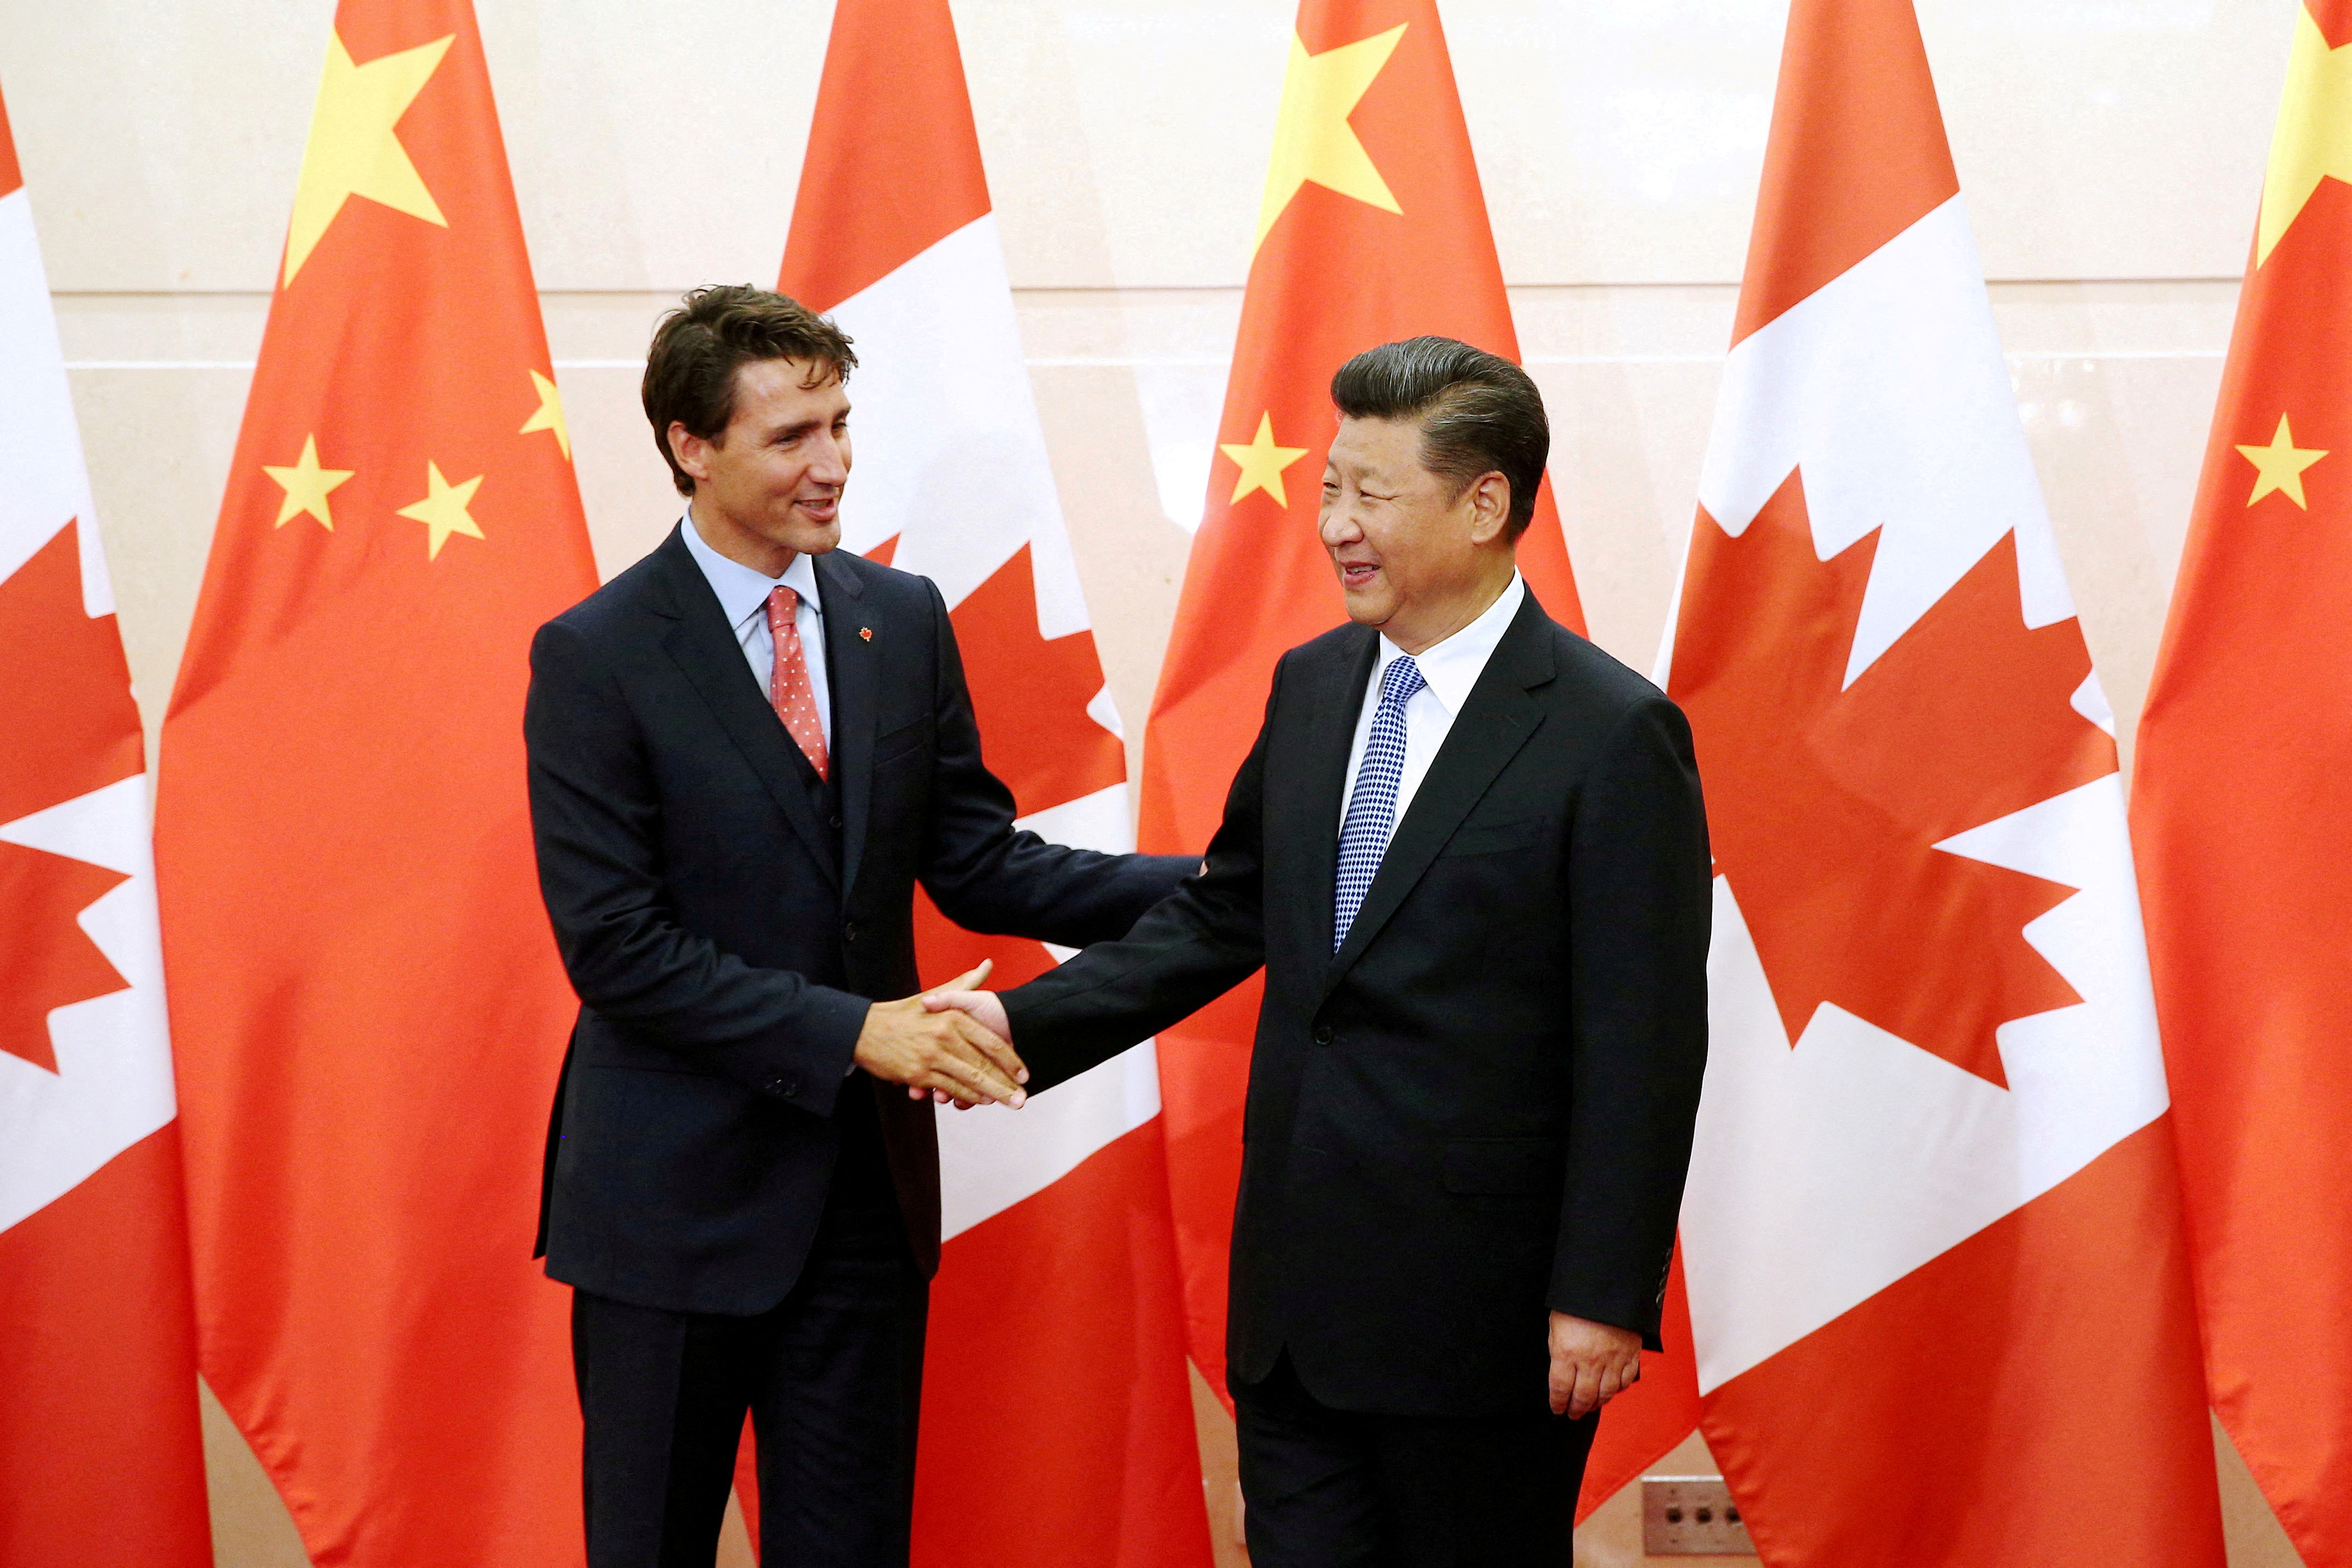 El Gobierno del primer ministro Justin Trudeau busca diversificar los lazos comerciales y económicos que dependen mayoritariamente de Estados Unidos. Los datos oficiales de septiembre muestran que el comercio bilateral con China representa menos del 7% del total, frente al 68% de Estados Unidos. (REUTERS)